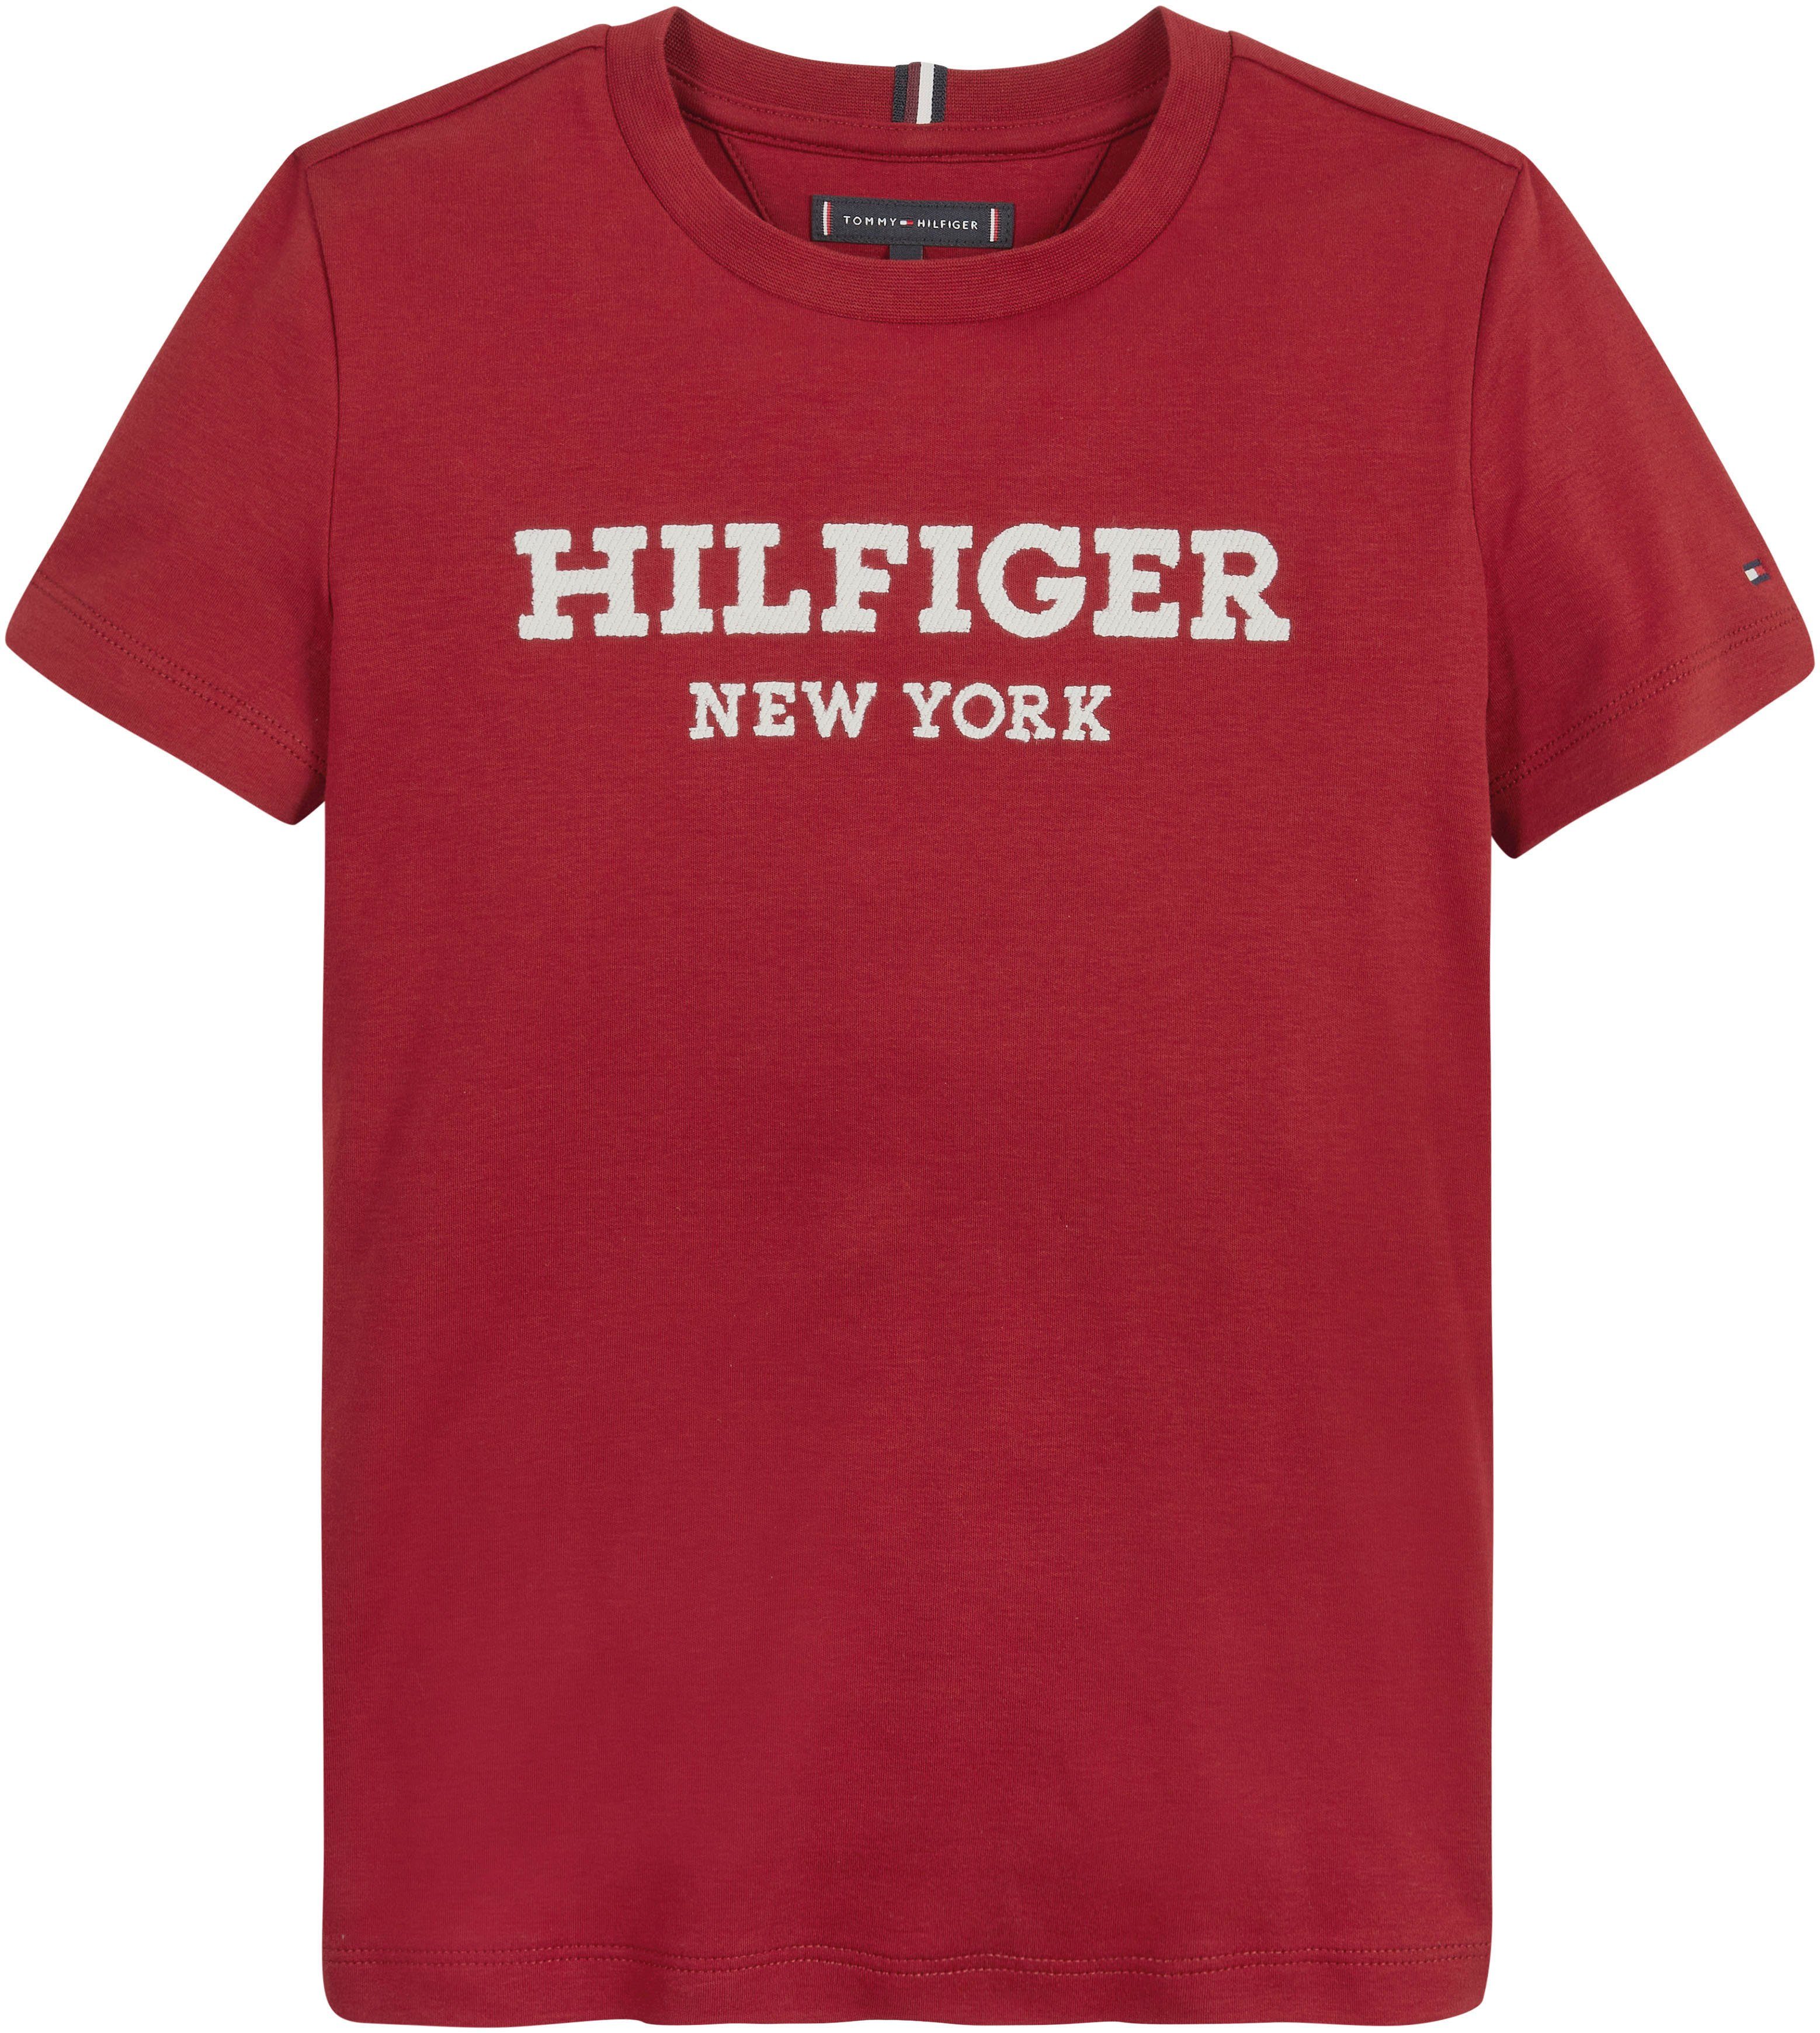 S/S Hilfiger Hilfiger LOGO TEE Rouge Tommy HILFIGER Statement Print mit T-Shirt